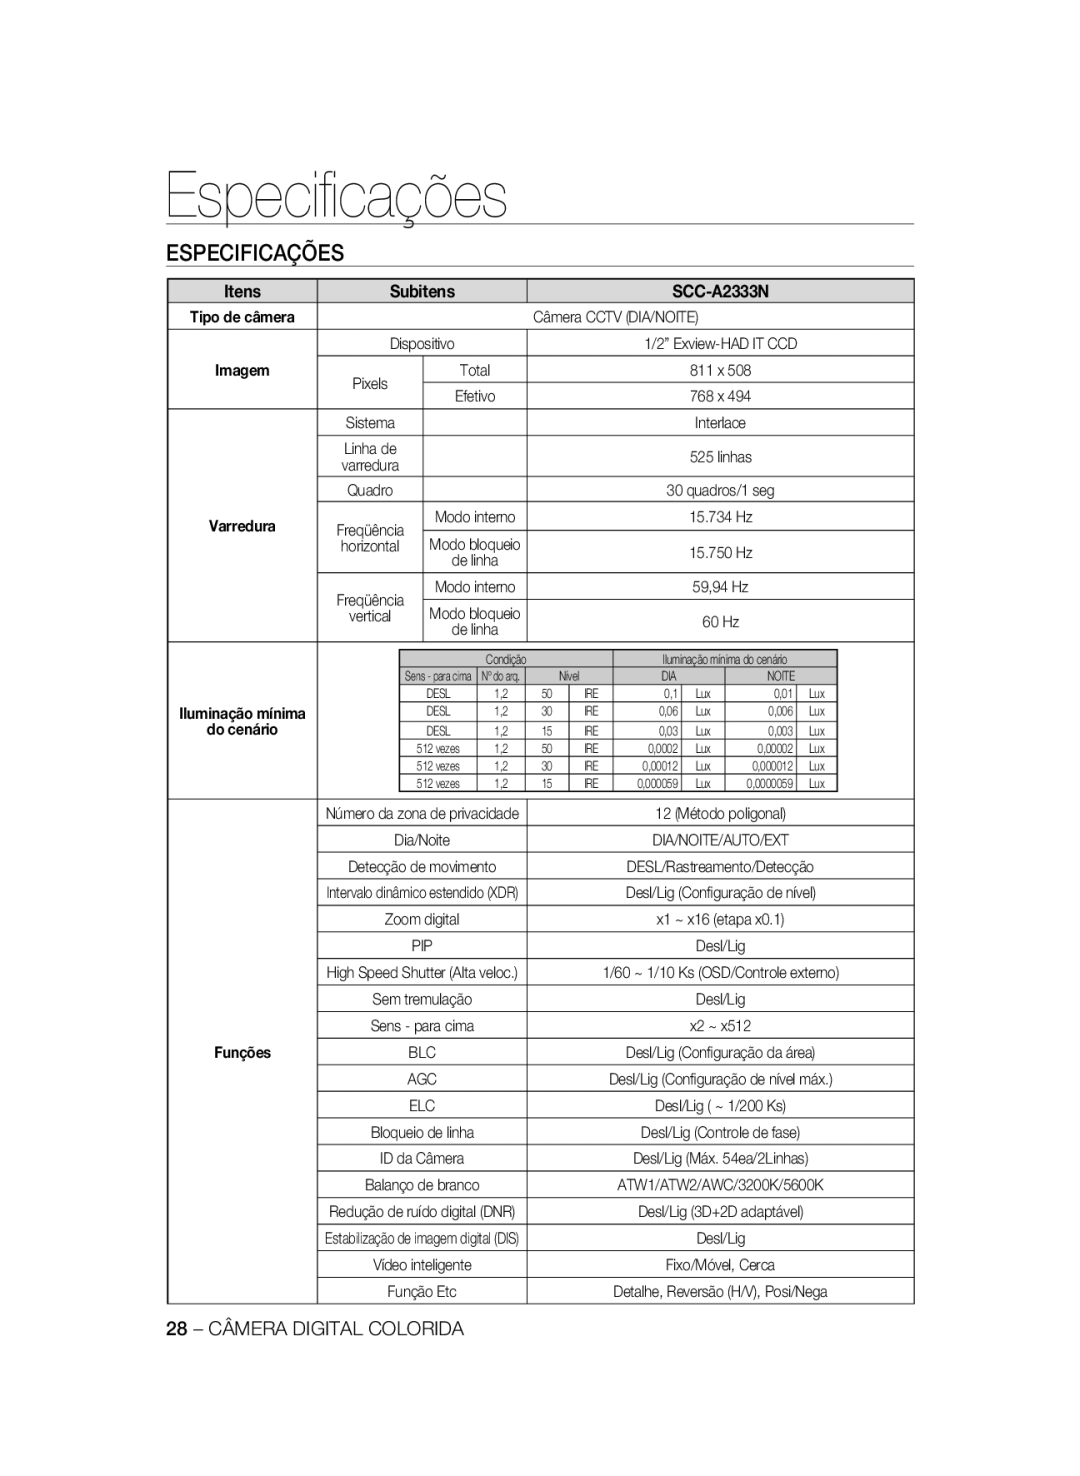 Samsung SCC-A2333P, SCC-A2033P manual Especiﬁcações, Especificações, Itens, Subitens, SCC-A2333N, do cenário 